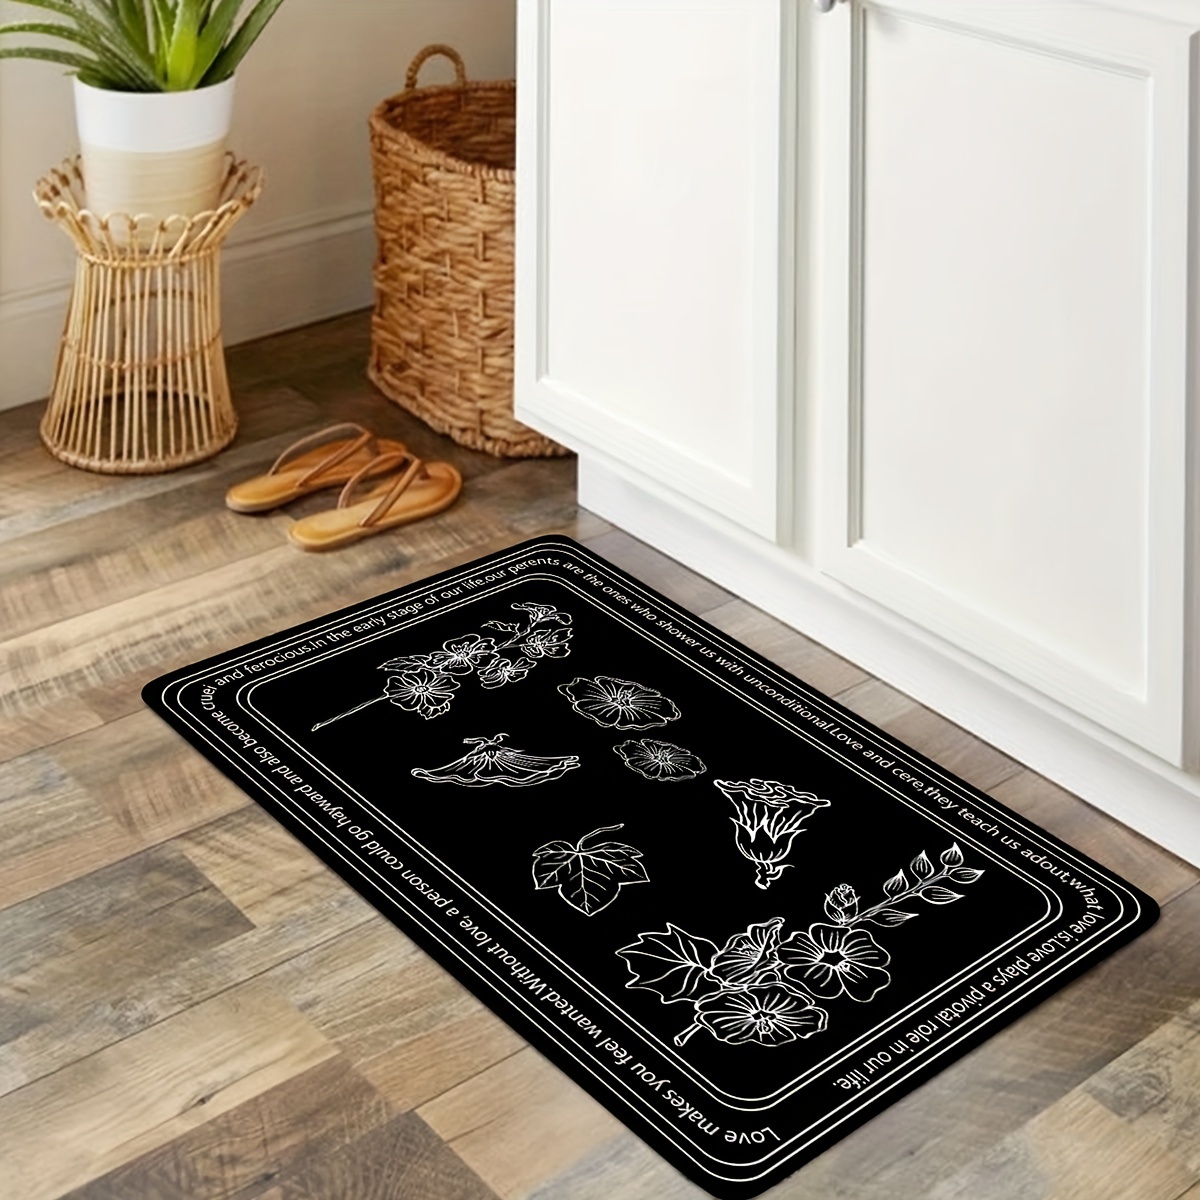 Super Absorbent Floor Mat Quick Drying Bathroom Mat Non-slip Floor Door  Carpet Easy To Clean Home Oil-proof Kitchen Mat 40*60cm